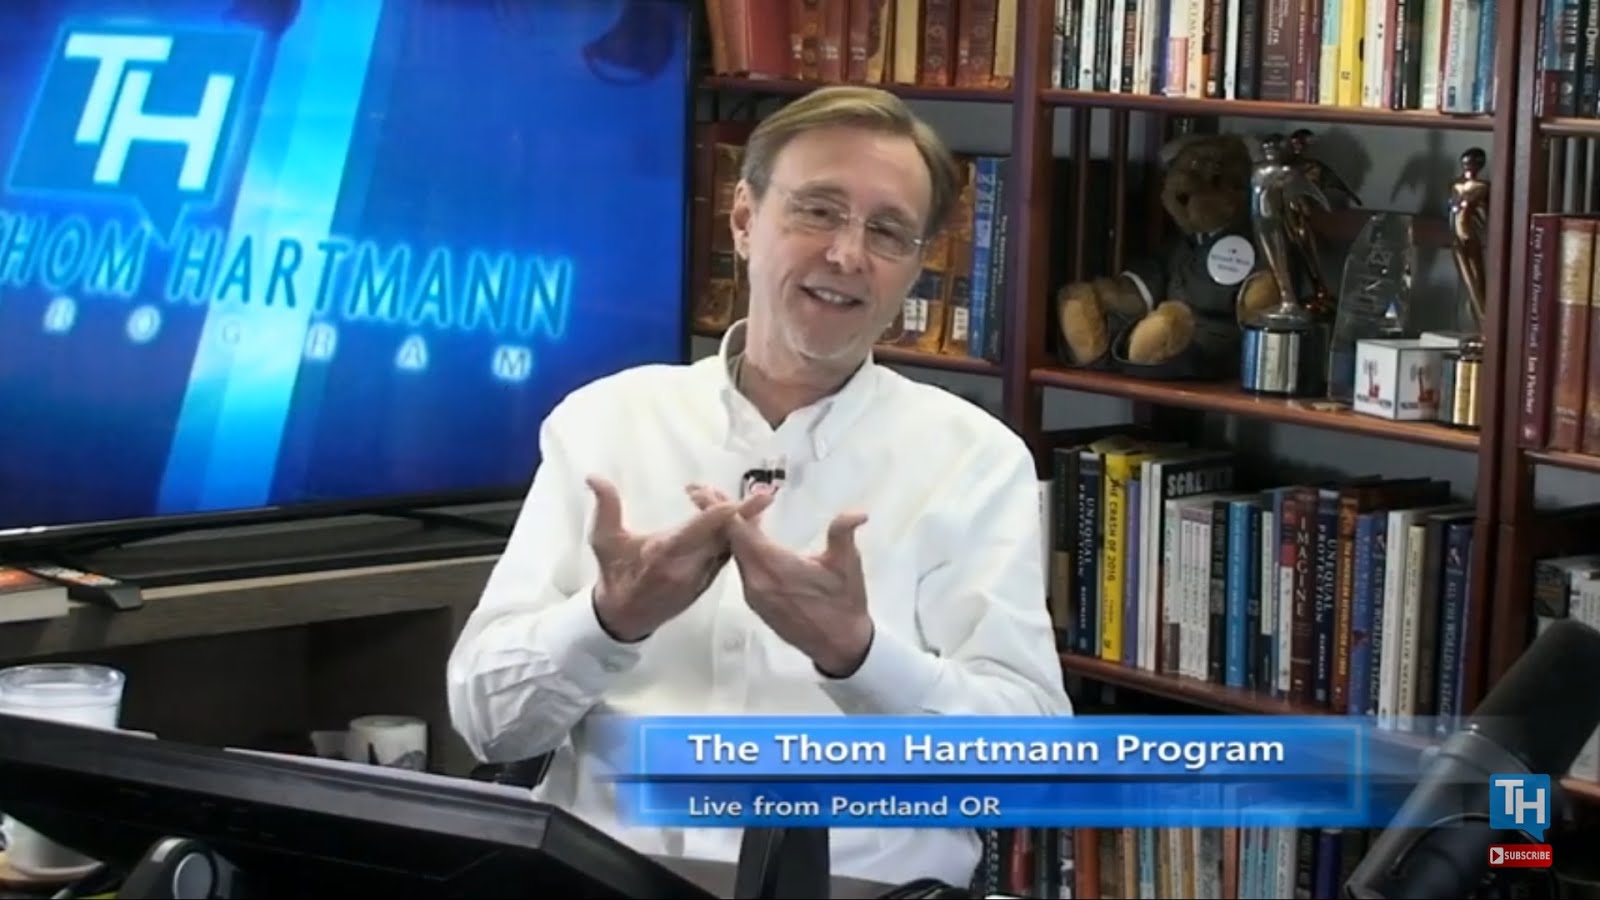 Thom Hartmann is a propagandist left-wing lunatic lying radio host